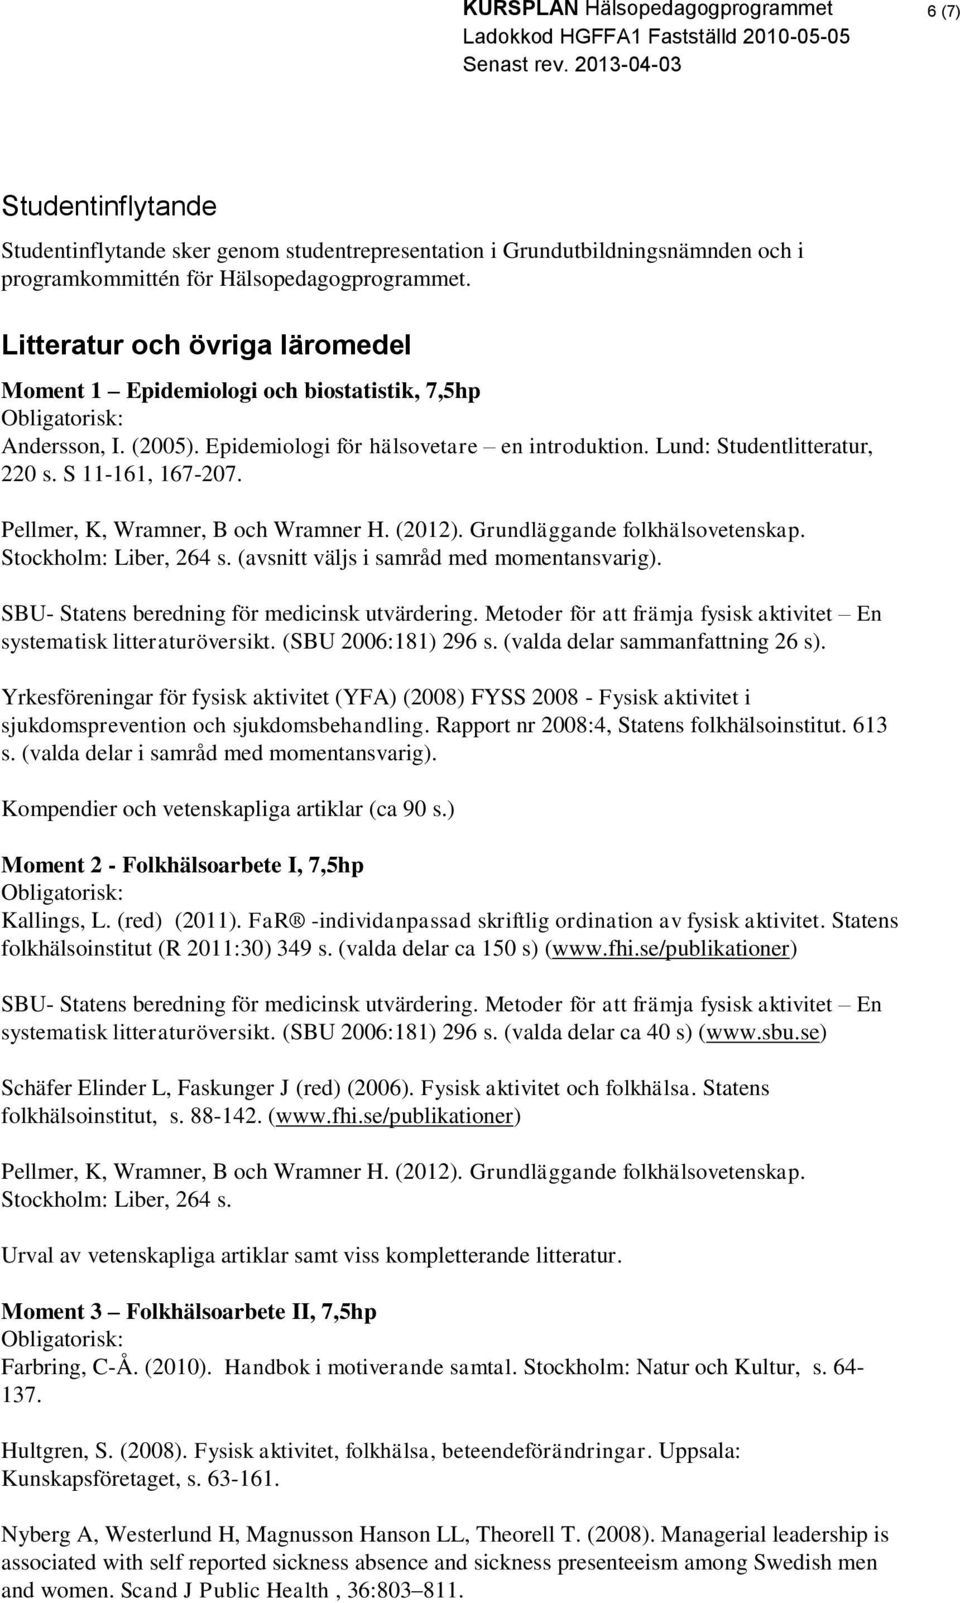 Pellmer, K, Wramner, B och Wramner H. (2012). Grundläggande folkhälsovetenskap. Stockholm: Liber, 264 s. (avsnitt väljs i samråd med momentansvarig). SBU- Statens beredning för medicinsk utvärdering.